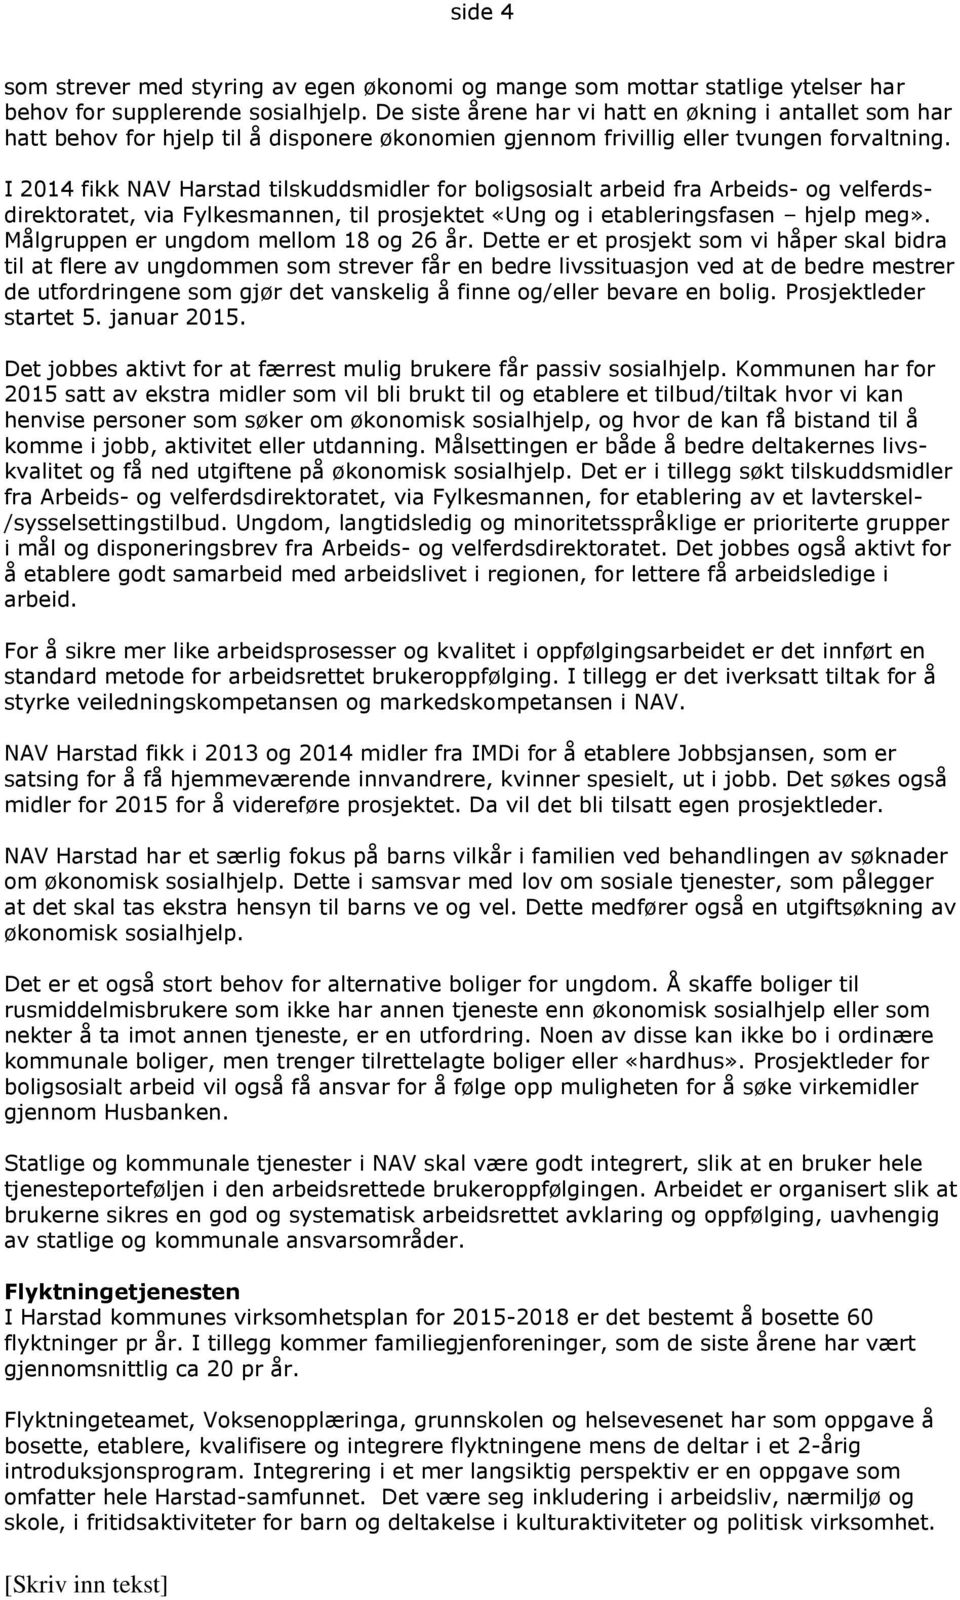 I 2014 fikk Harstad tilskuddsmidler for boligsosialt arbeid fra Arbeids- og velferdsdirektoratet, via Fylkesmannen, til prosjektet «Ung og i etableringsfasen hjelp meg».